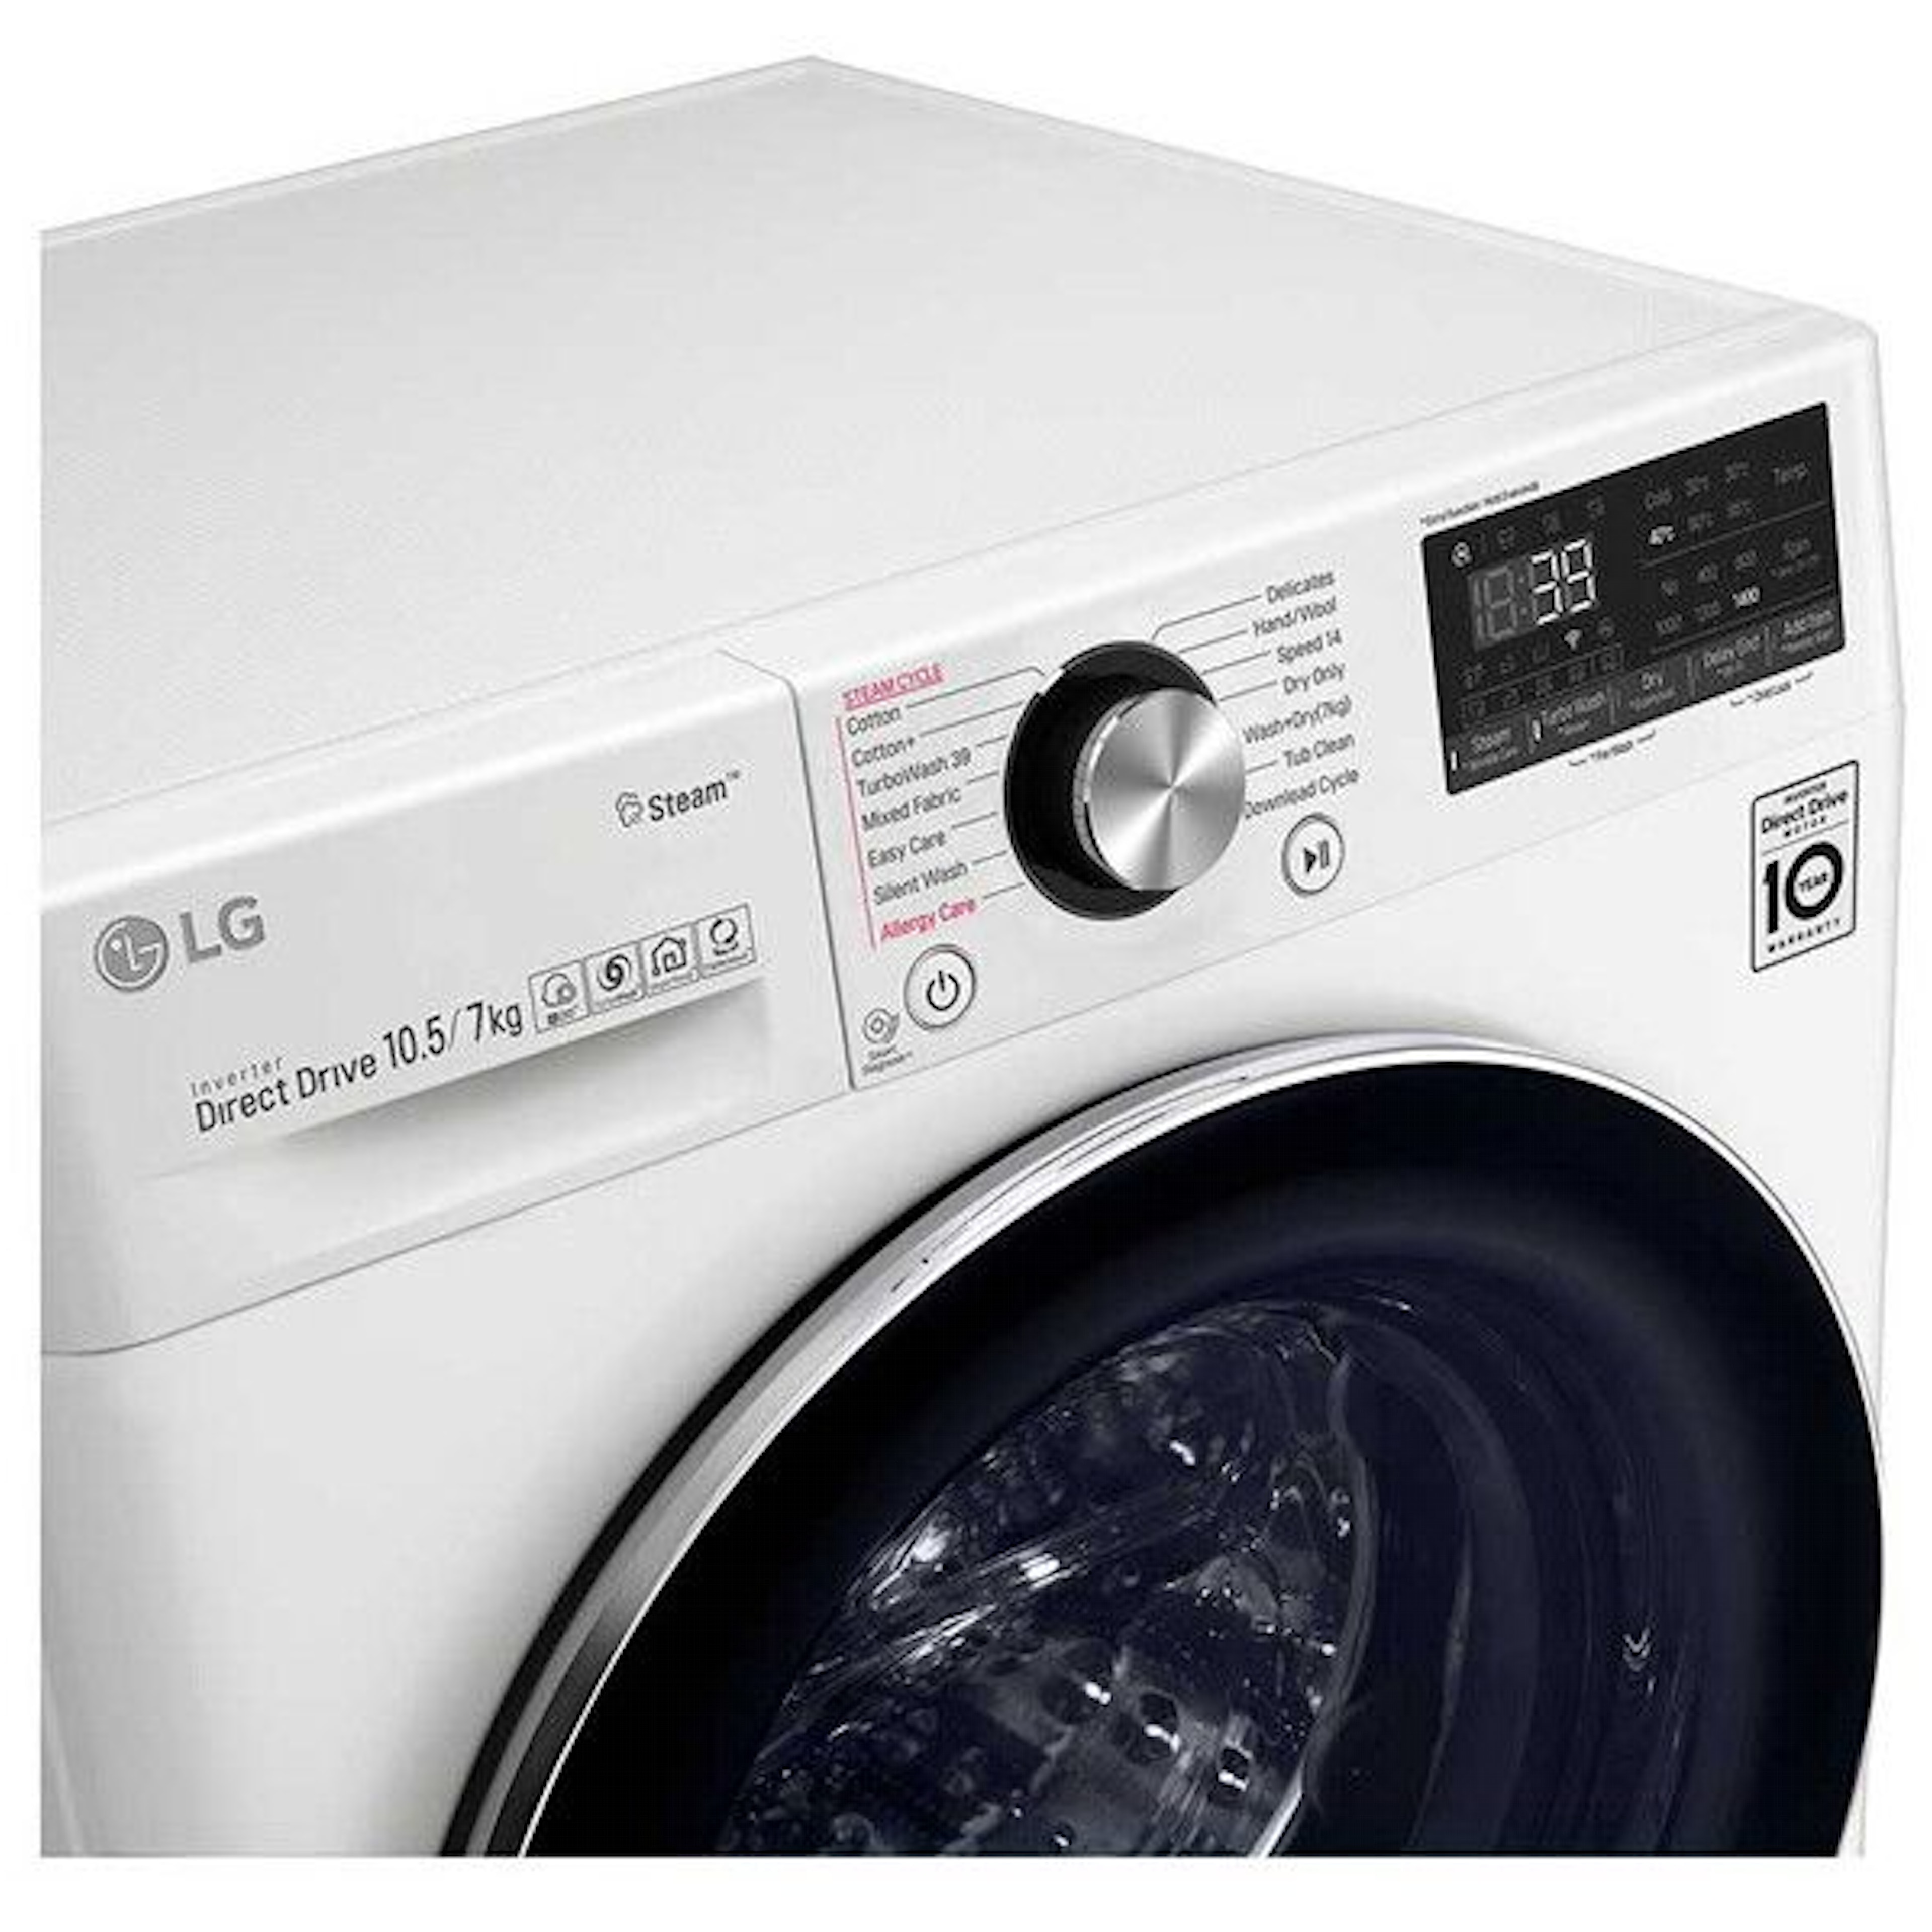 LG wasmachine F4DV910H2 afbeelding 3